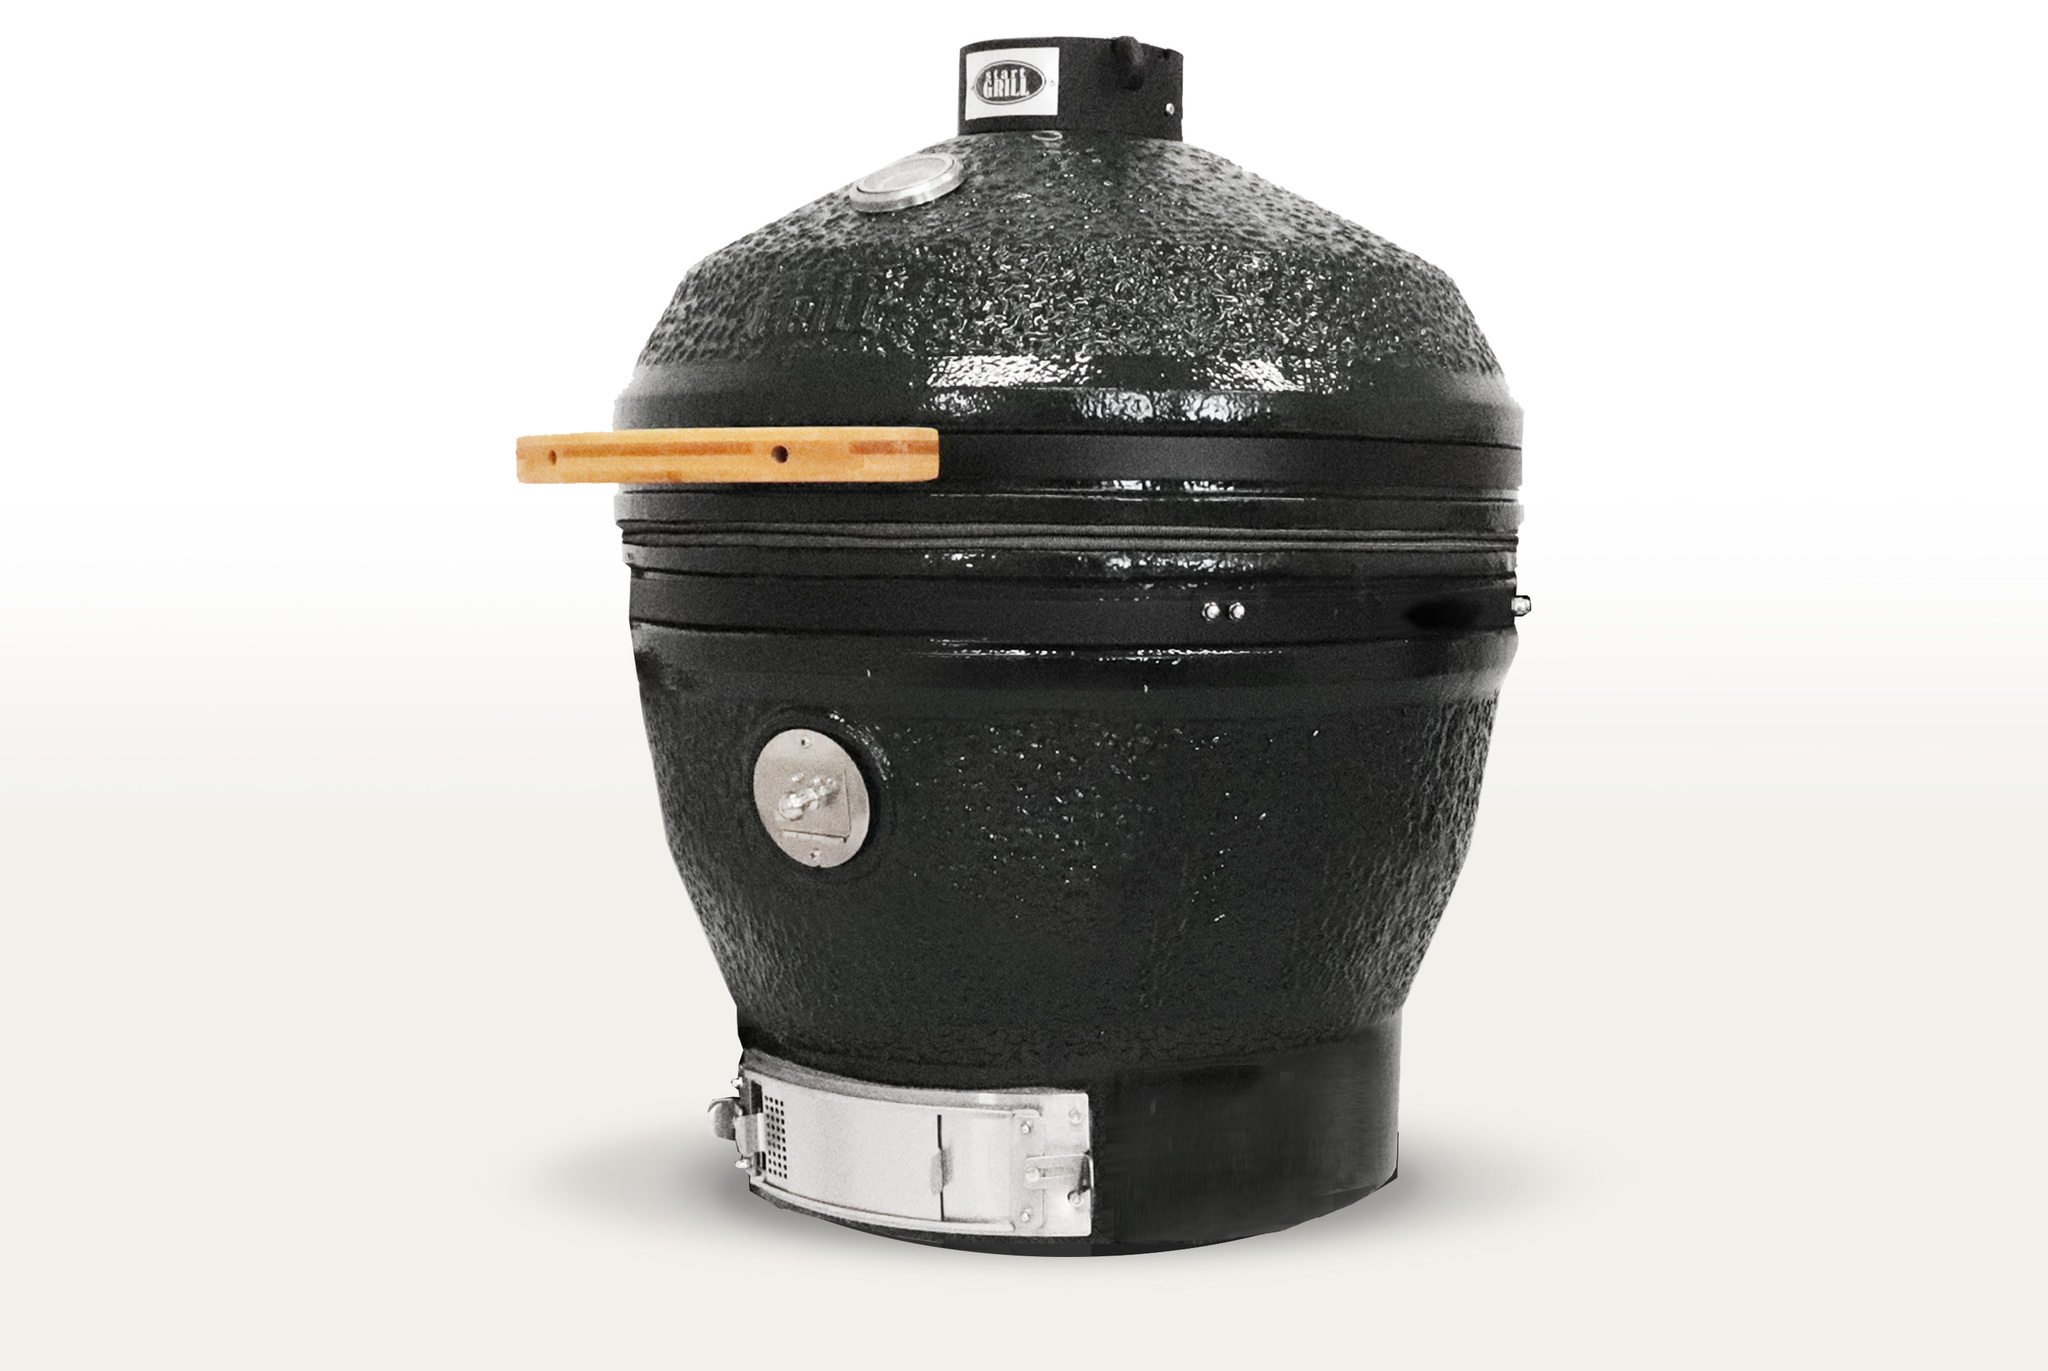 Керамический гриль-барбекю CFG CHEF, 61 см/24 дюйма (черный) Артикул: SG24PROCFGCHEFB Фото №4